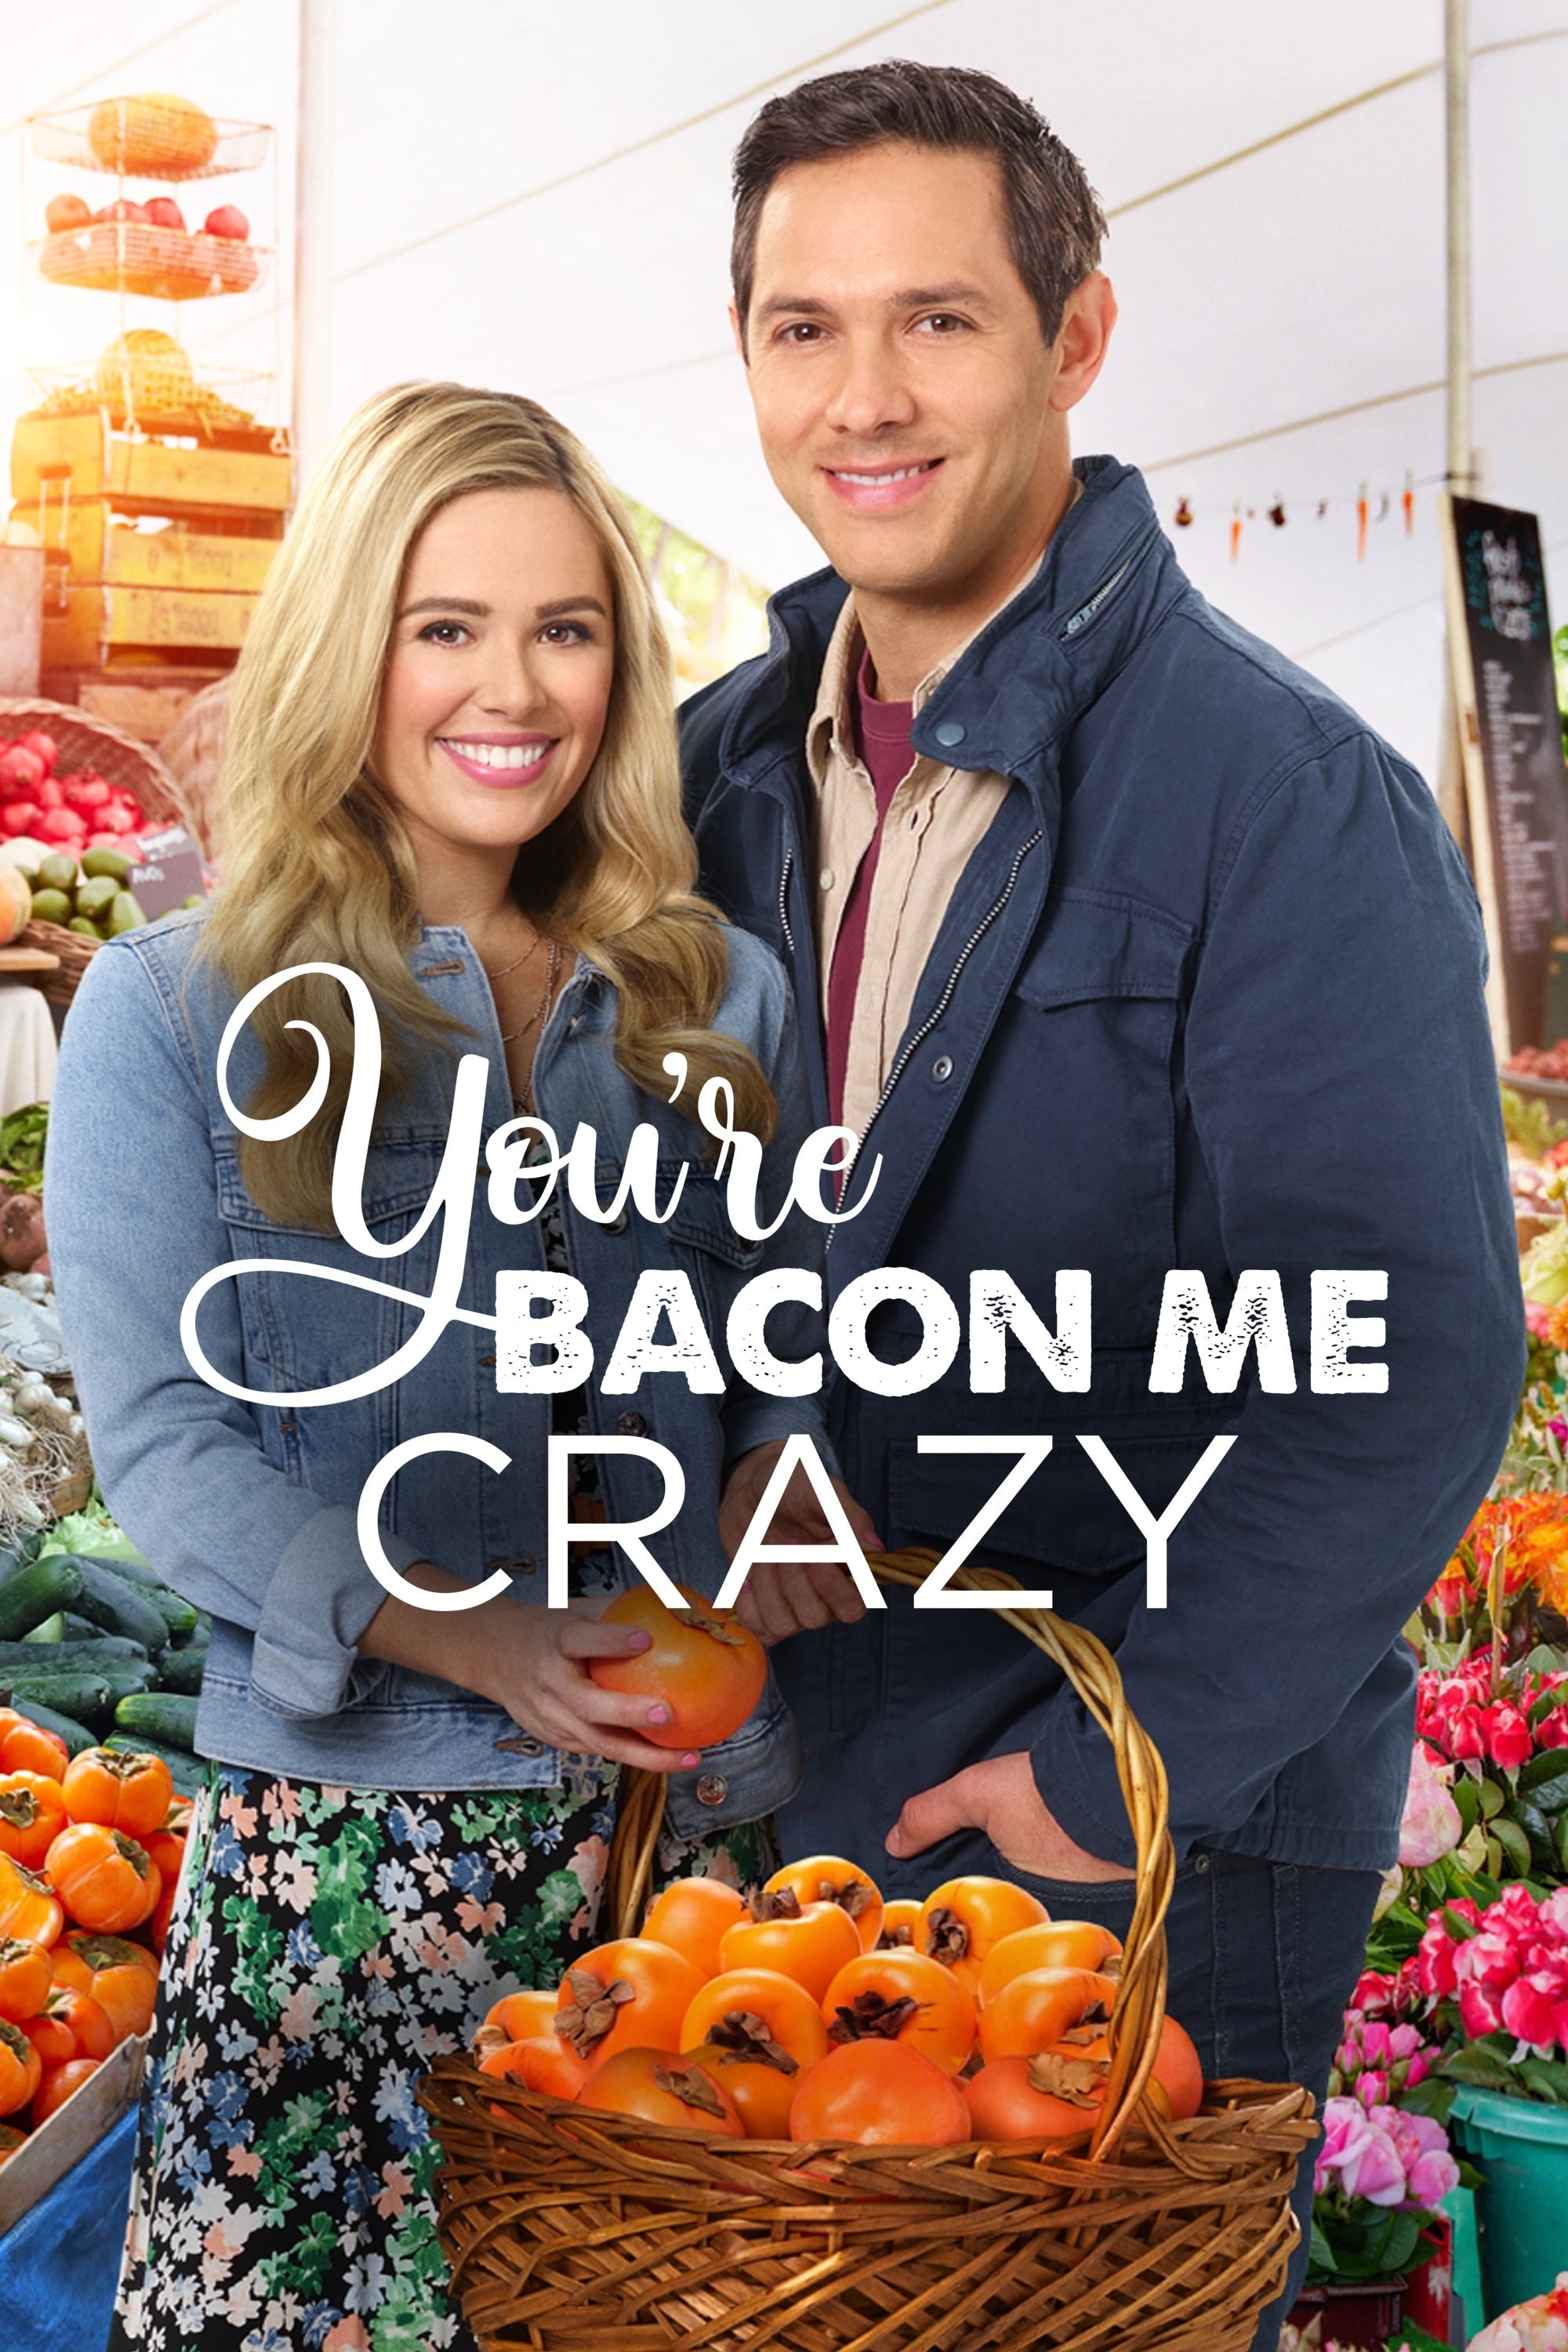 You're Bacon Me Crazy (2020)